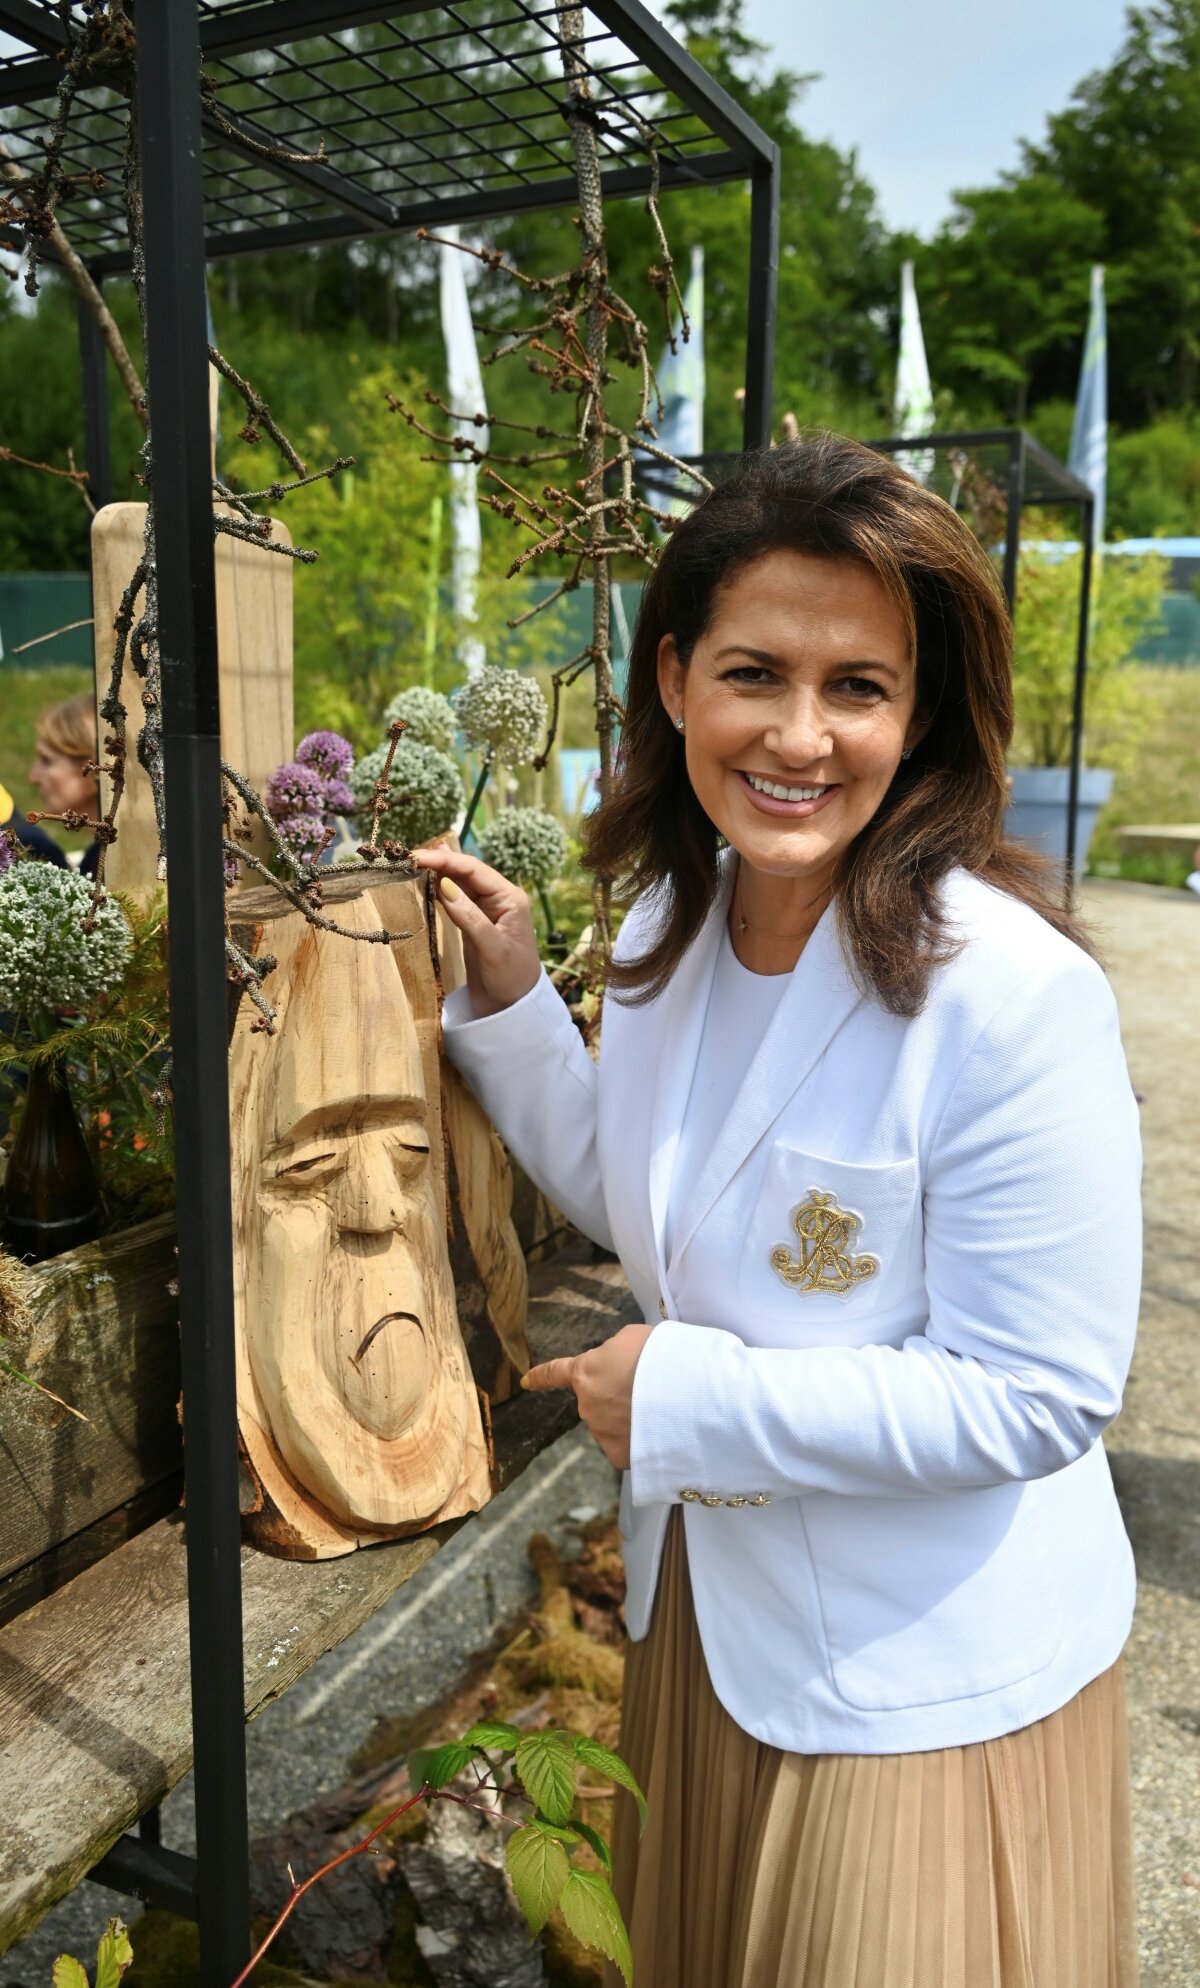 Ministerin Michaela Kaniber auf der Landesgartenschau in Freyung mit einem in Holz geschnitztem Gesicht.